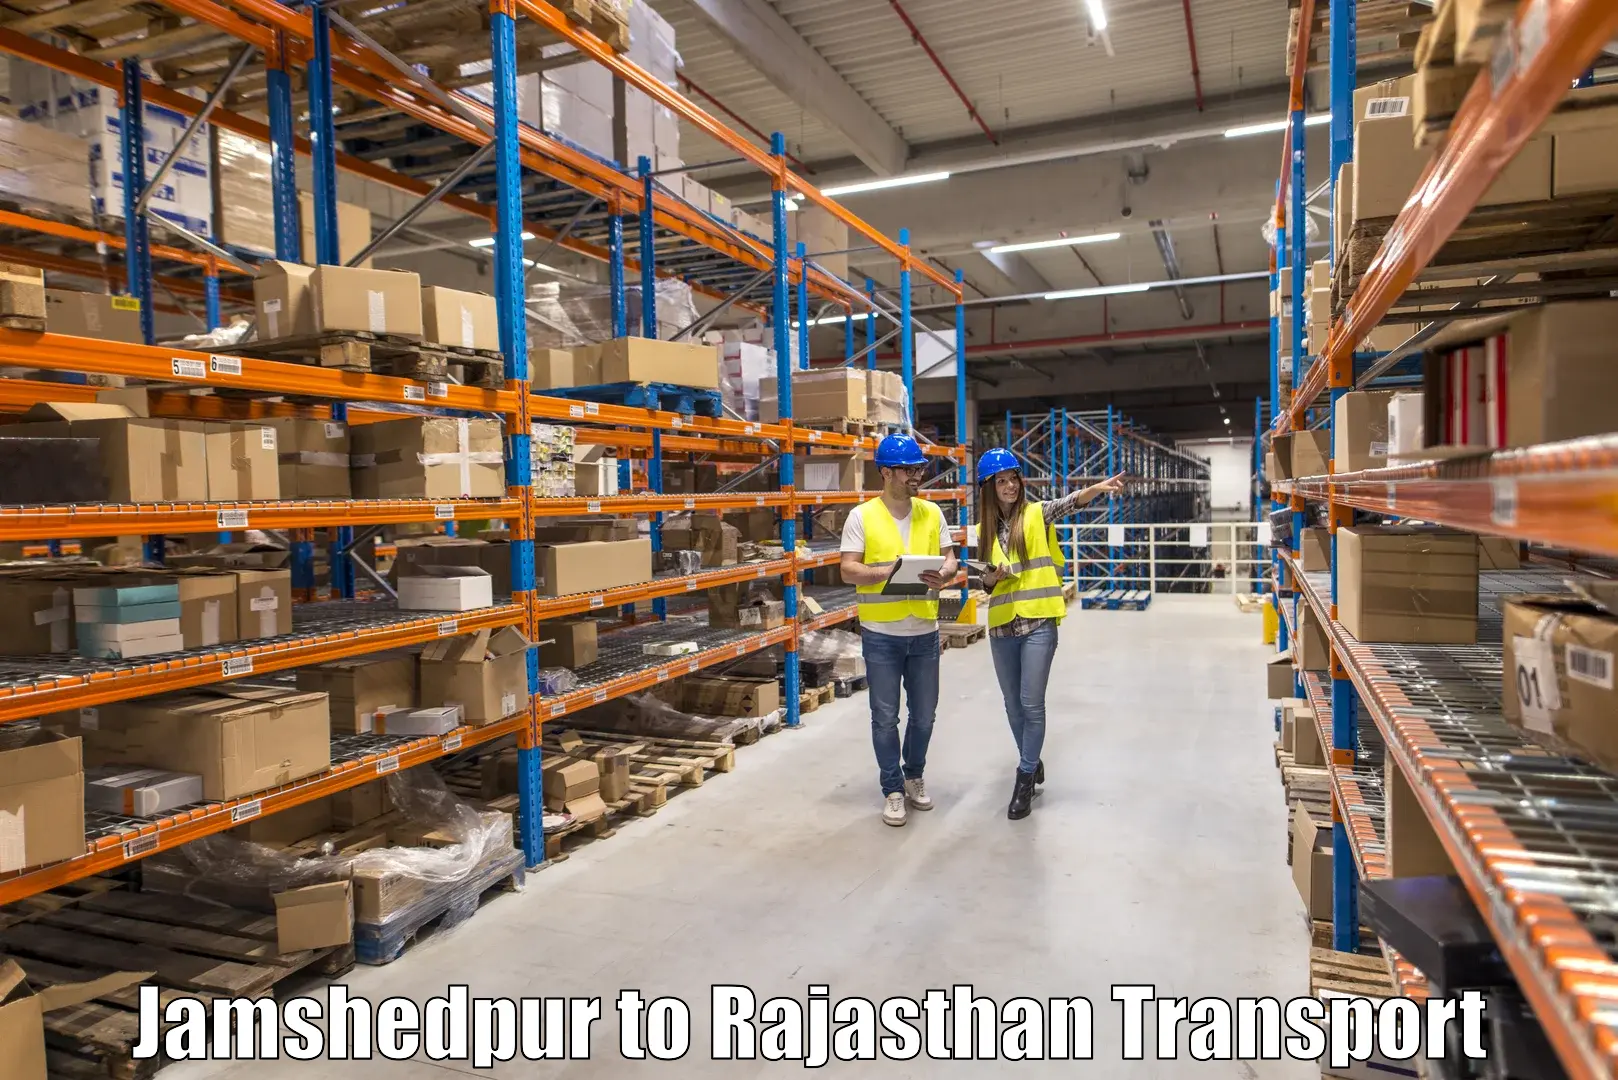 Inland transportation services Jamshedpur to Keshoraipatan